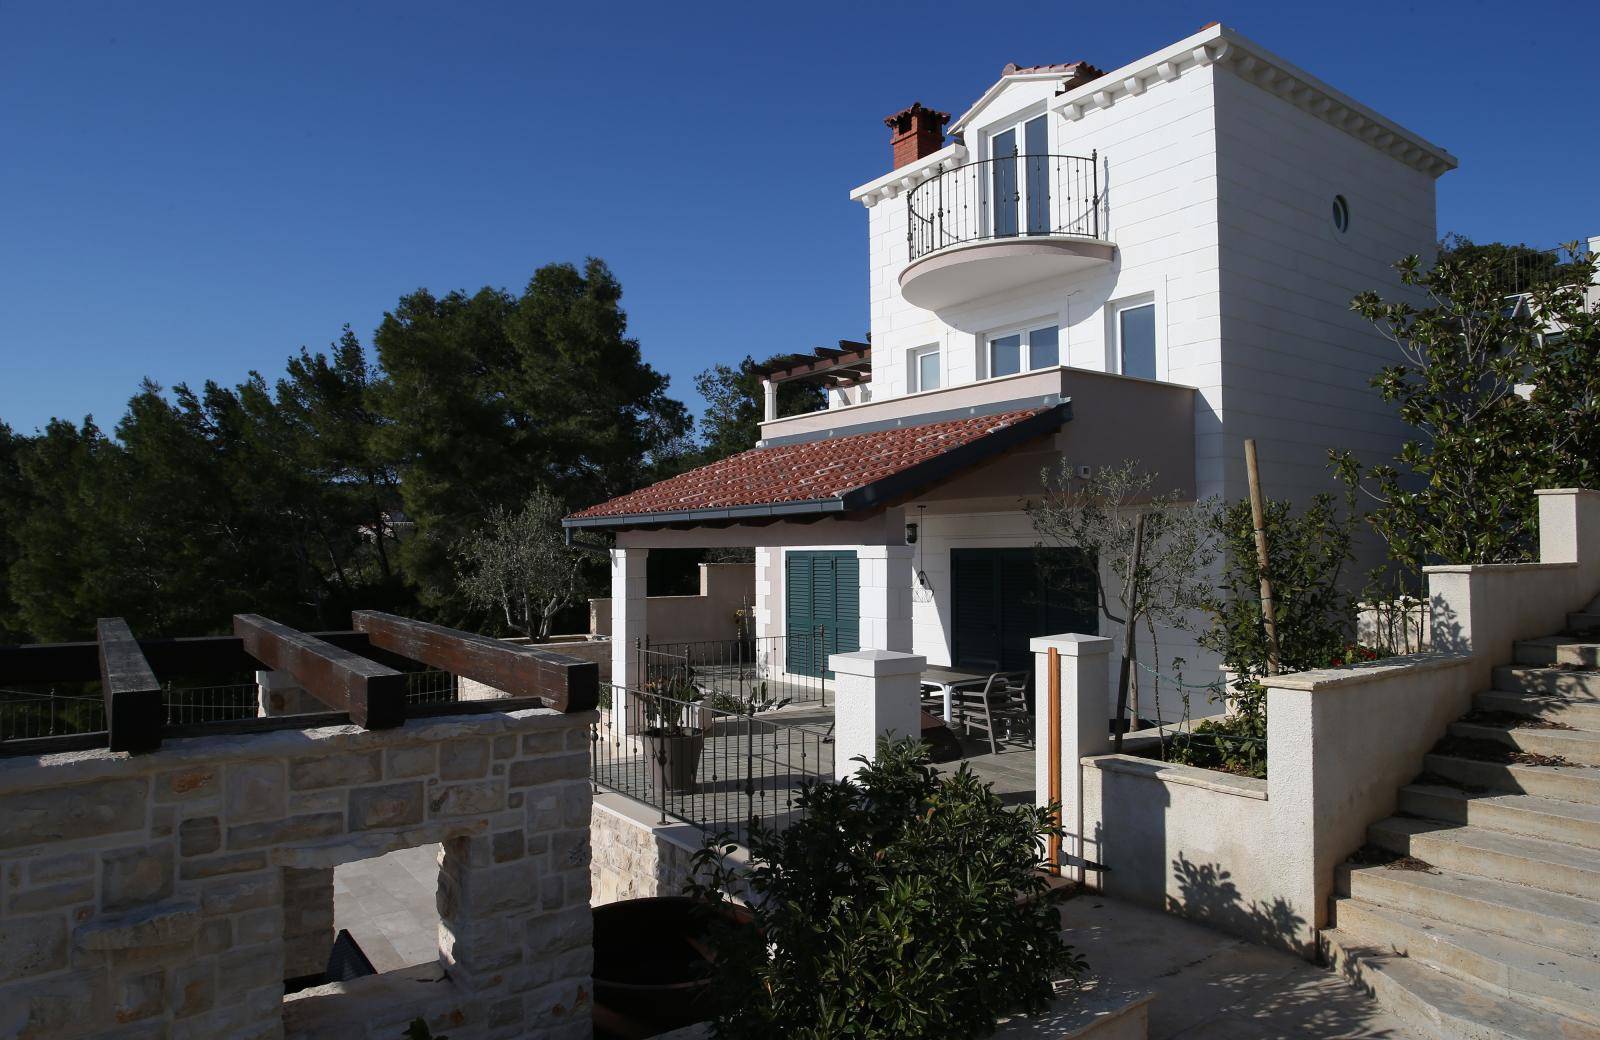 Gibonni kupio dvore na Korčuli: Ima imovinu od 10 milijuna kn